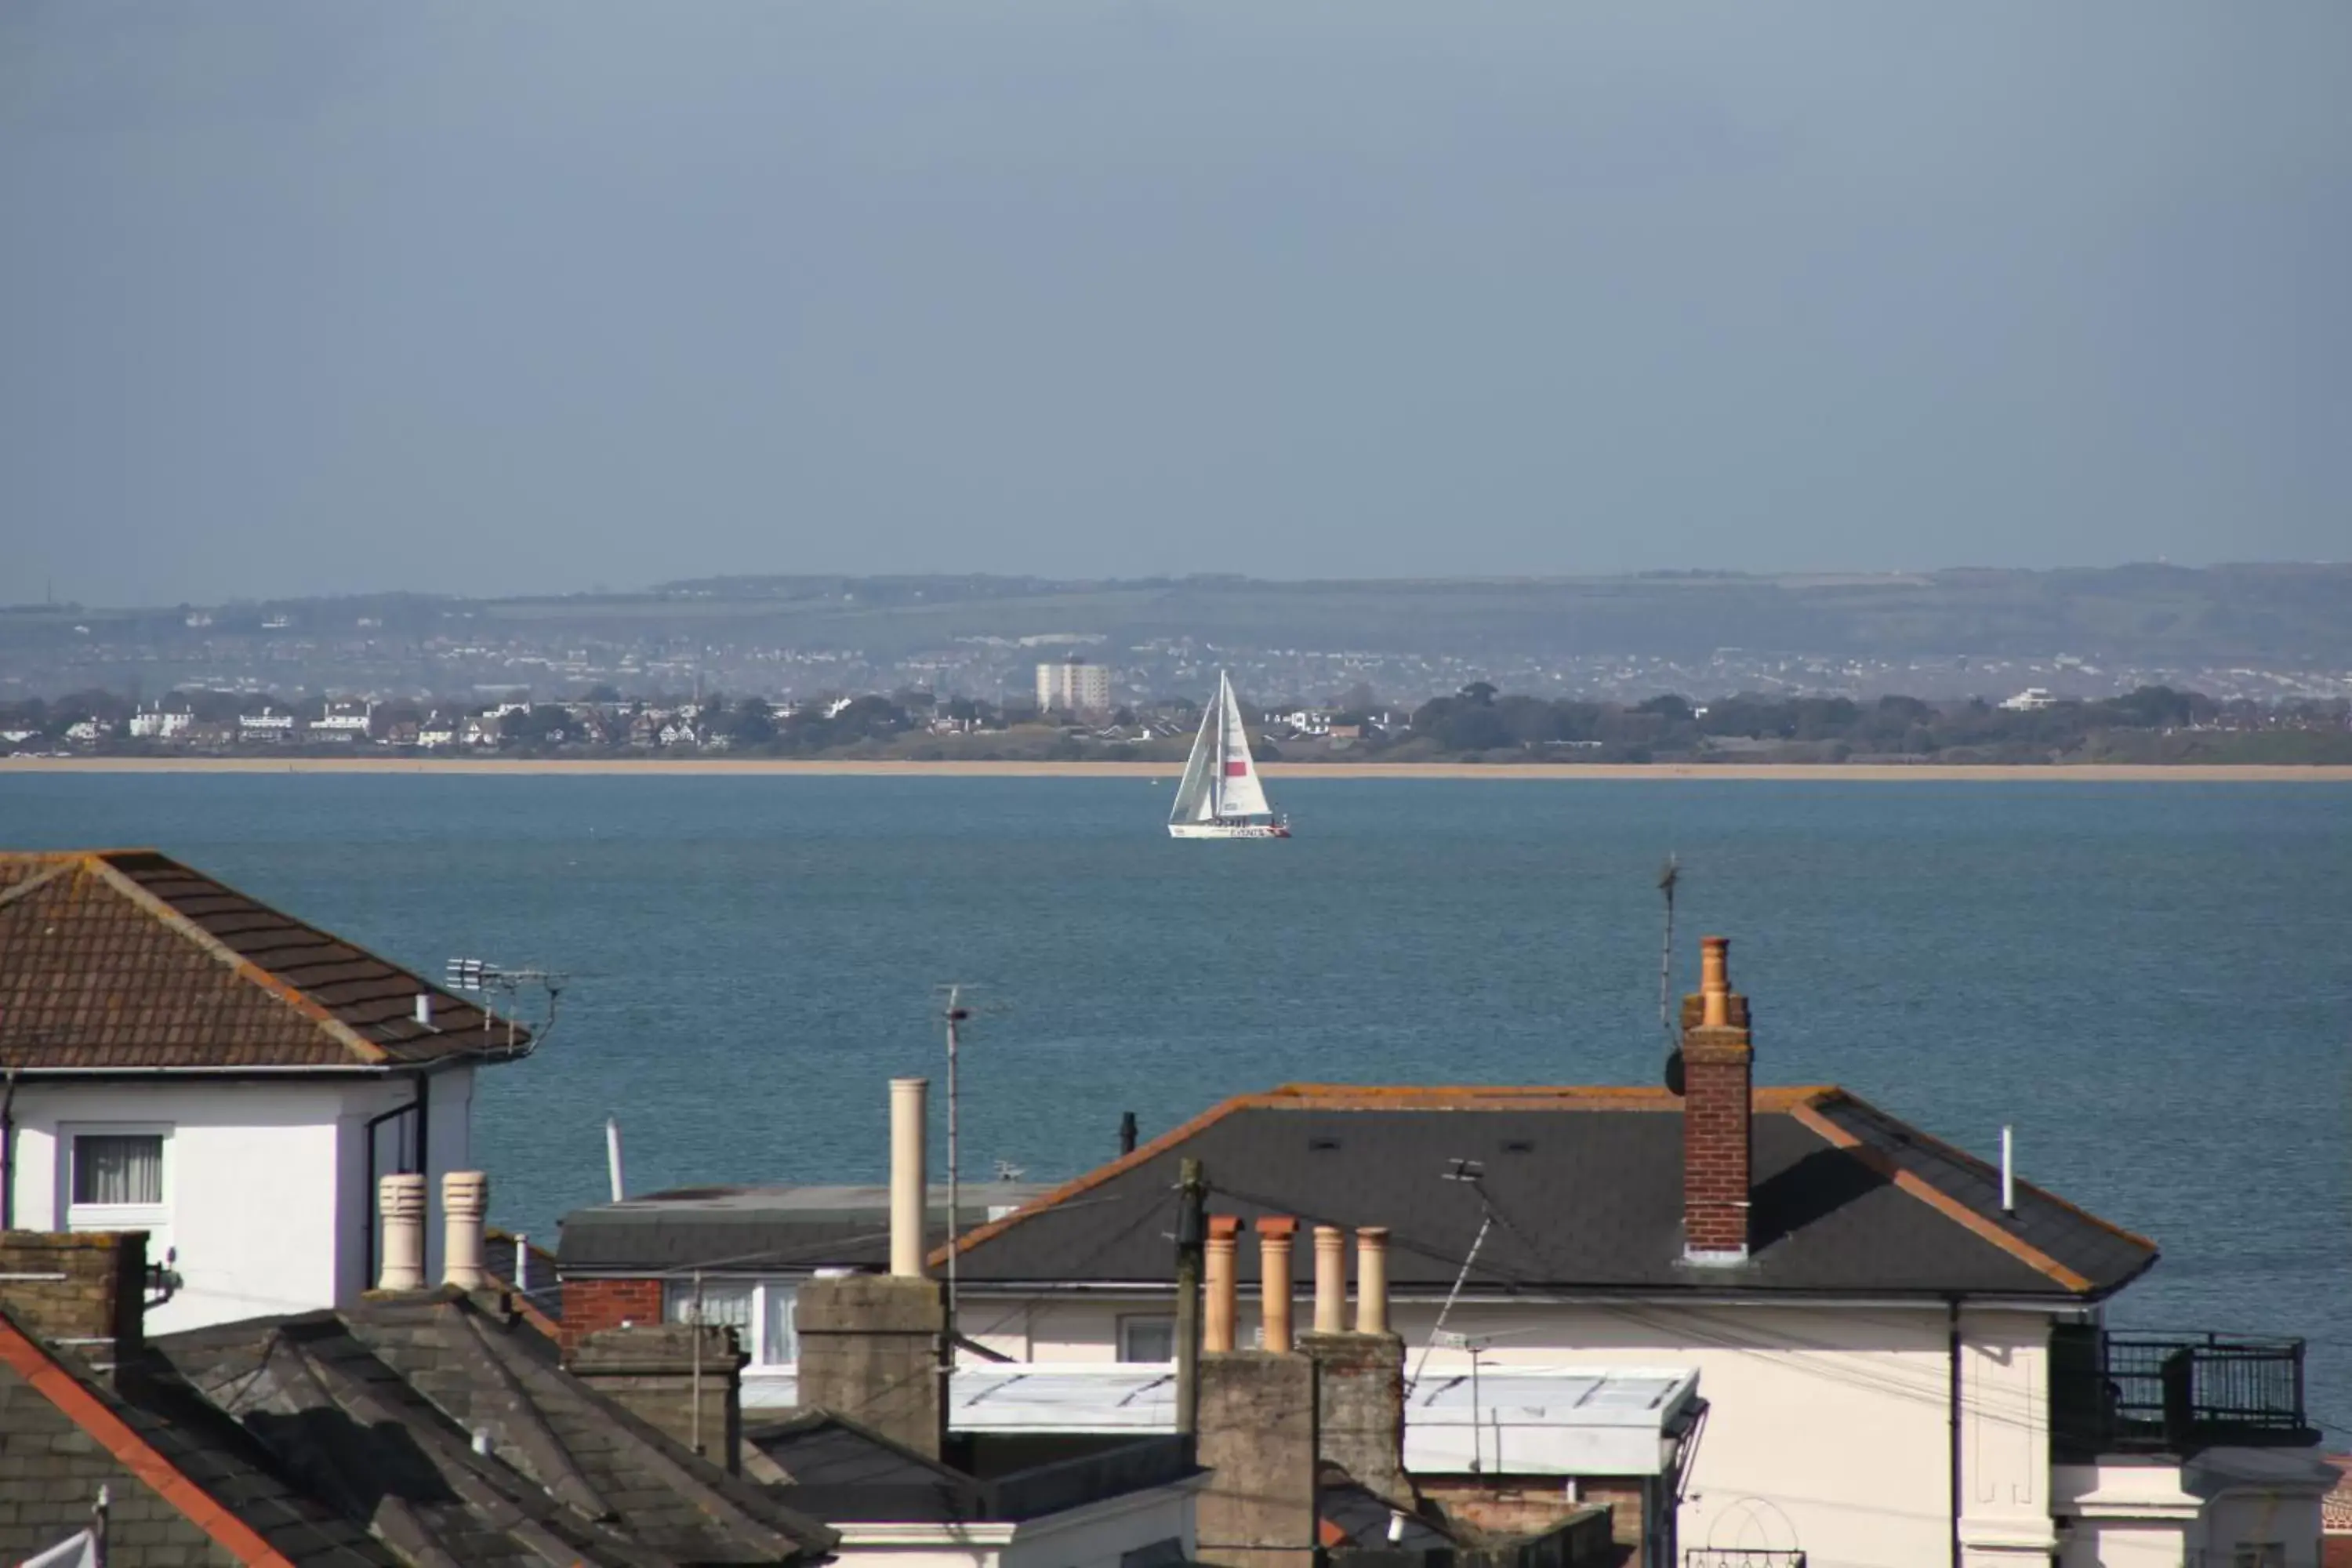 Sea view in Dorset Hotel, Isle of Wight